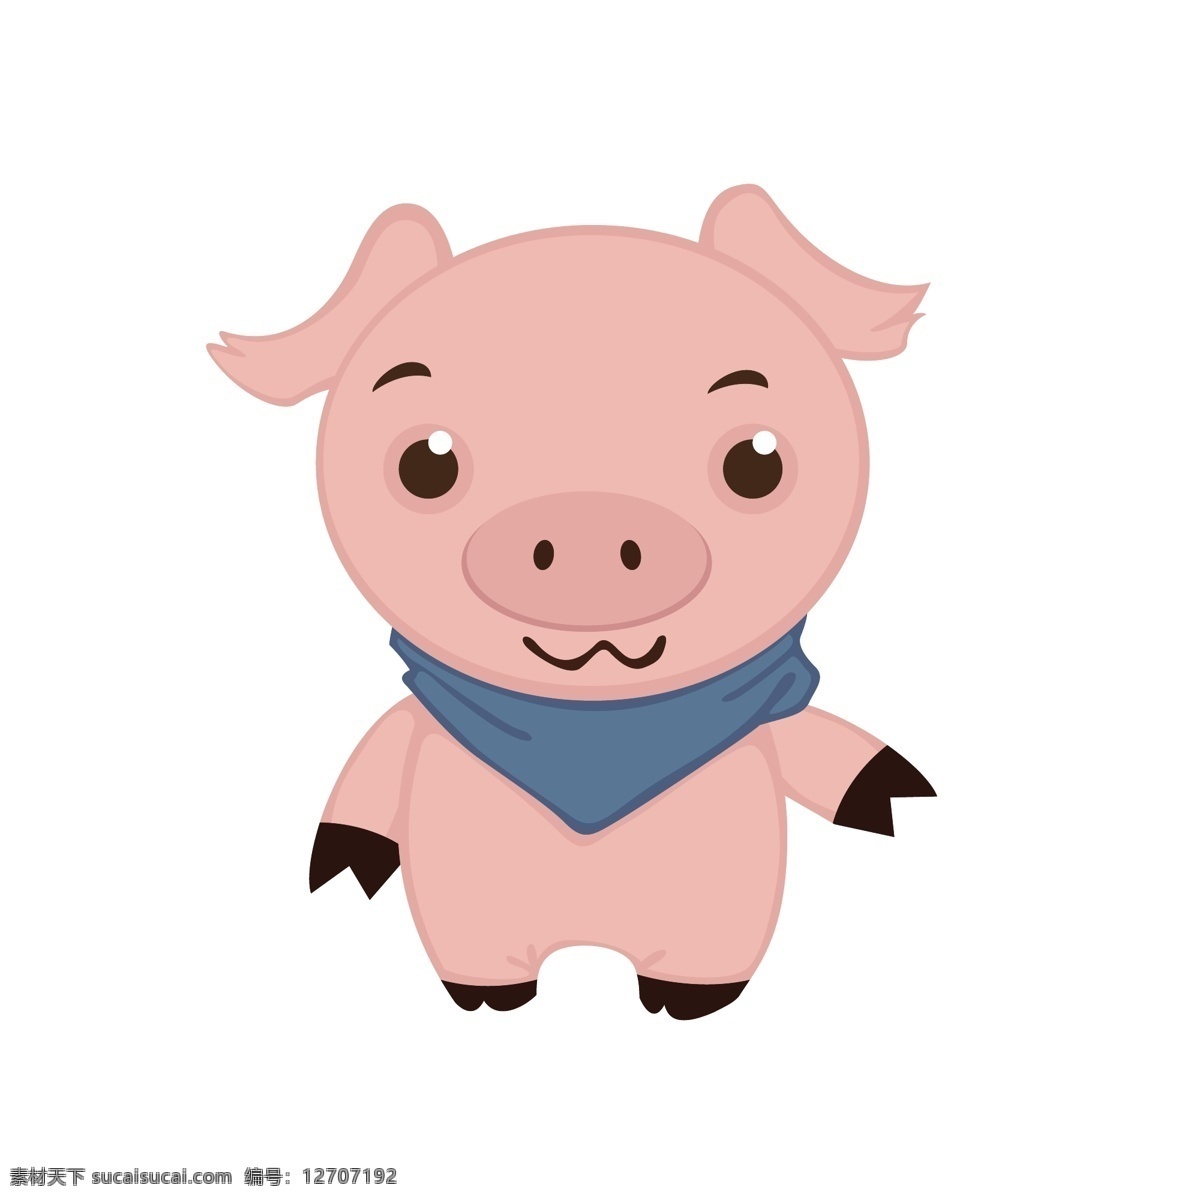 粉色 小 猪 矢量 粉色小猪 小猪 卡通 卡通动物 可爱 可爱动物 可爱的 可爱的小猪 卡通小猪